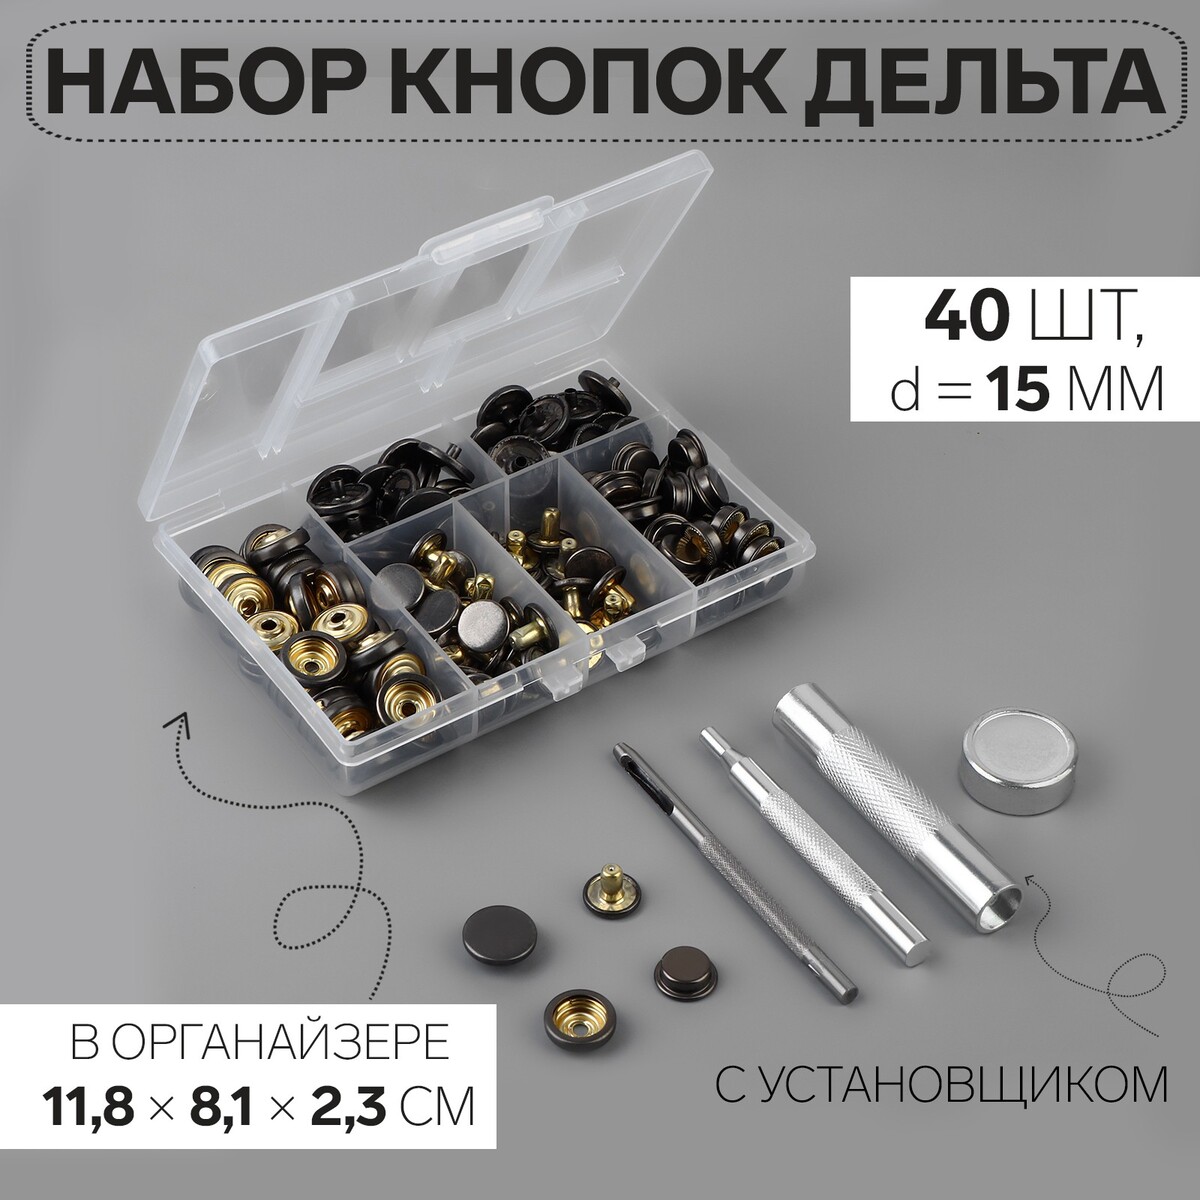 Кнопки установочные, дельта, d = 15 мм, 40 шт, с установщиком, в органайзере, 11,8 × 8,1 × 2,3 см, цвет черный никель